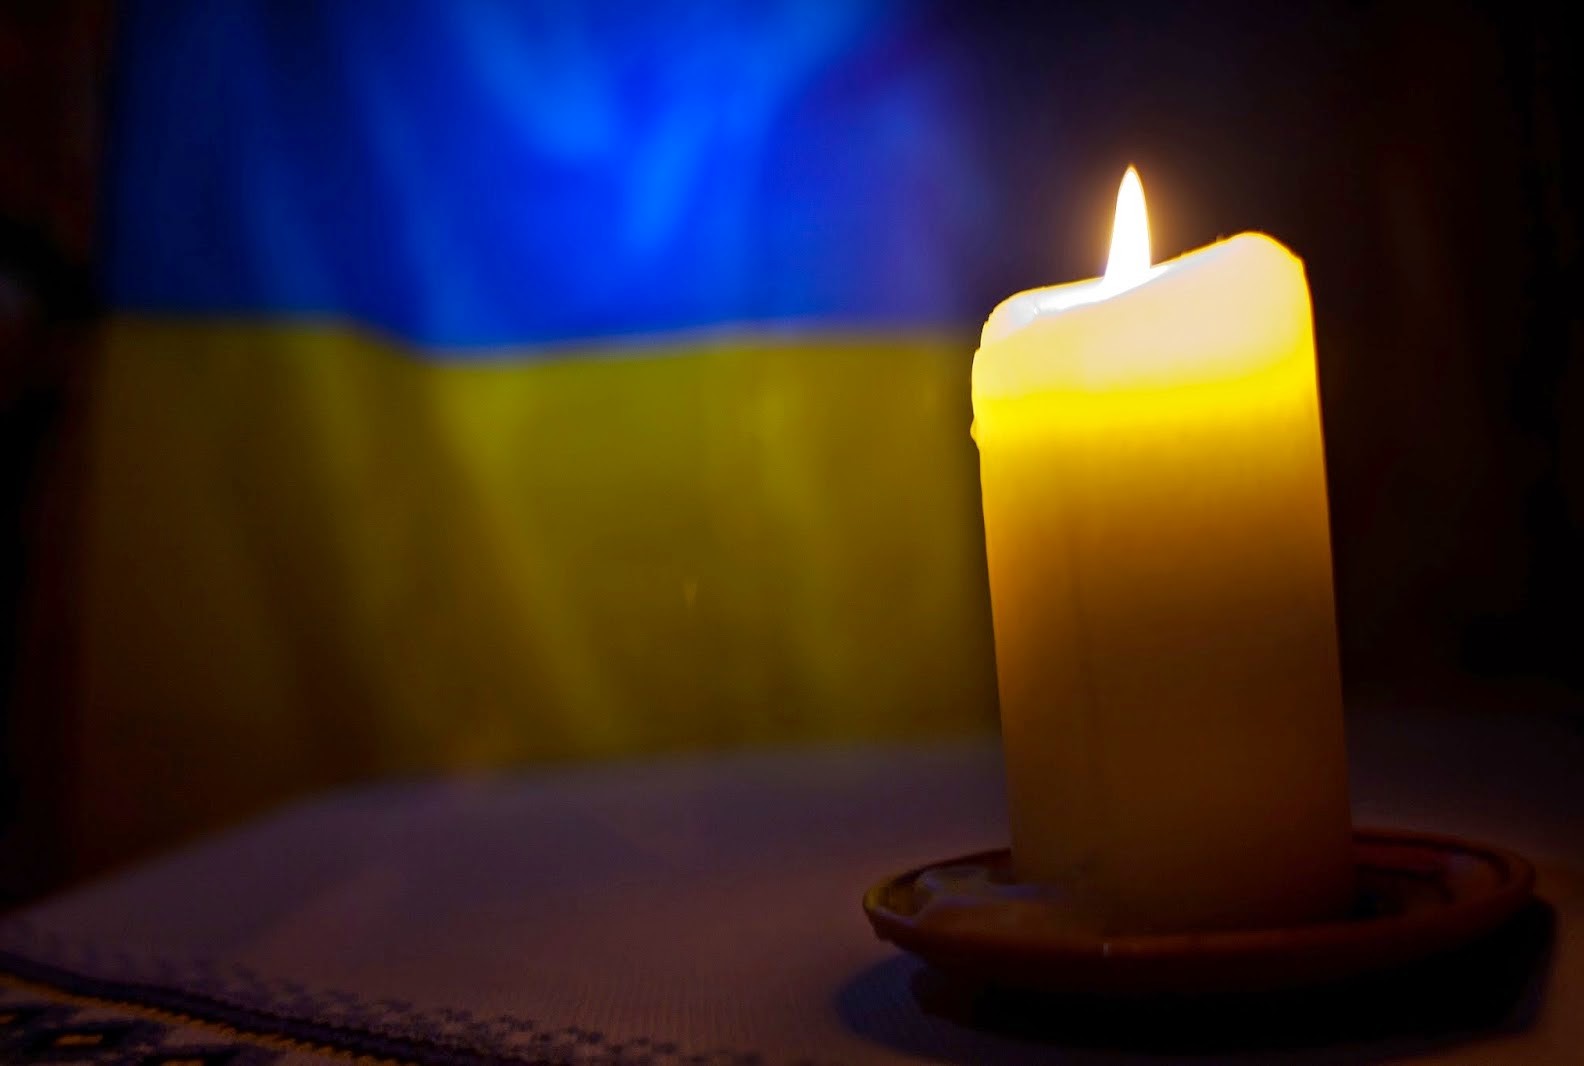 Сьогодні День пам’яті житомирянина Максима Савченко, що загинув в зоні АТО. Вшануй пам’ять Героя!